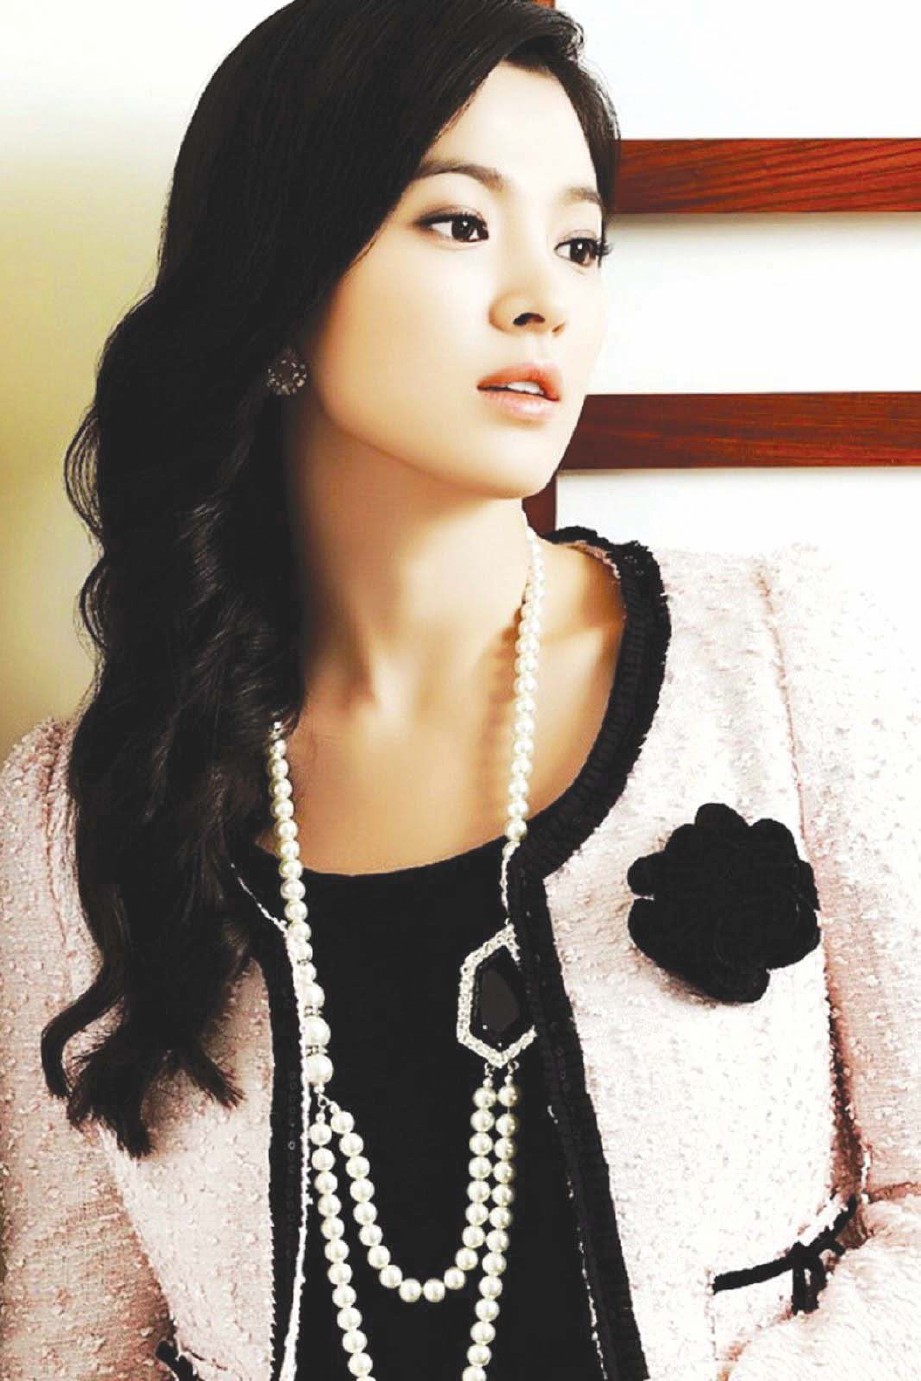 GAYA rambut Song Hye Kyo juga menjadi tarikan ramai.